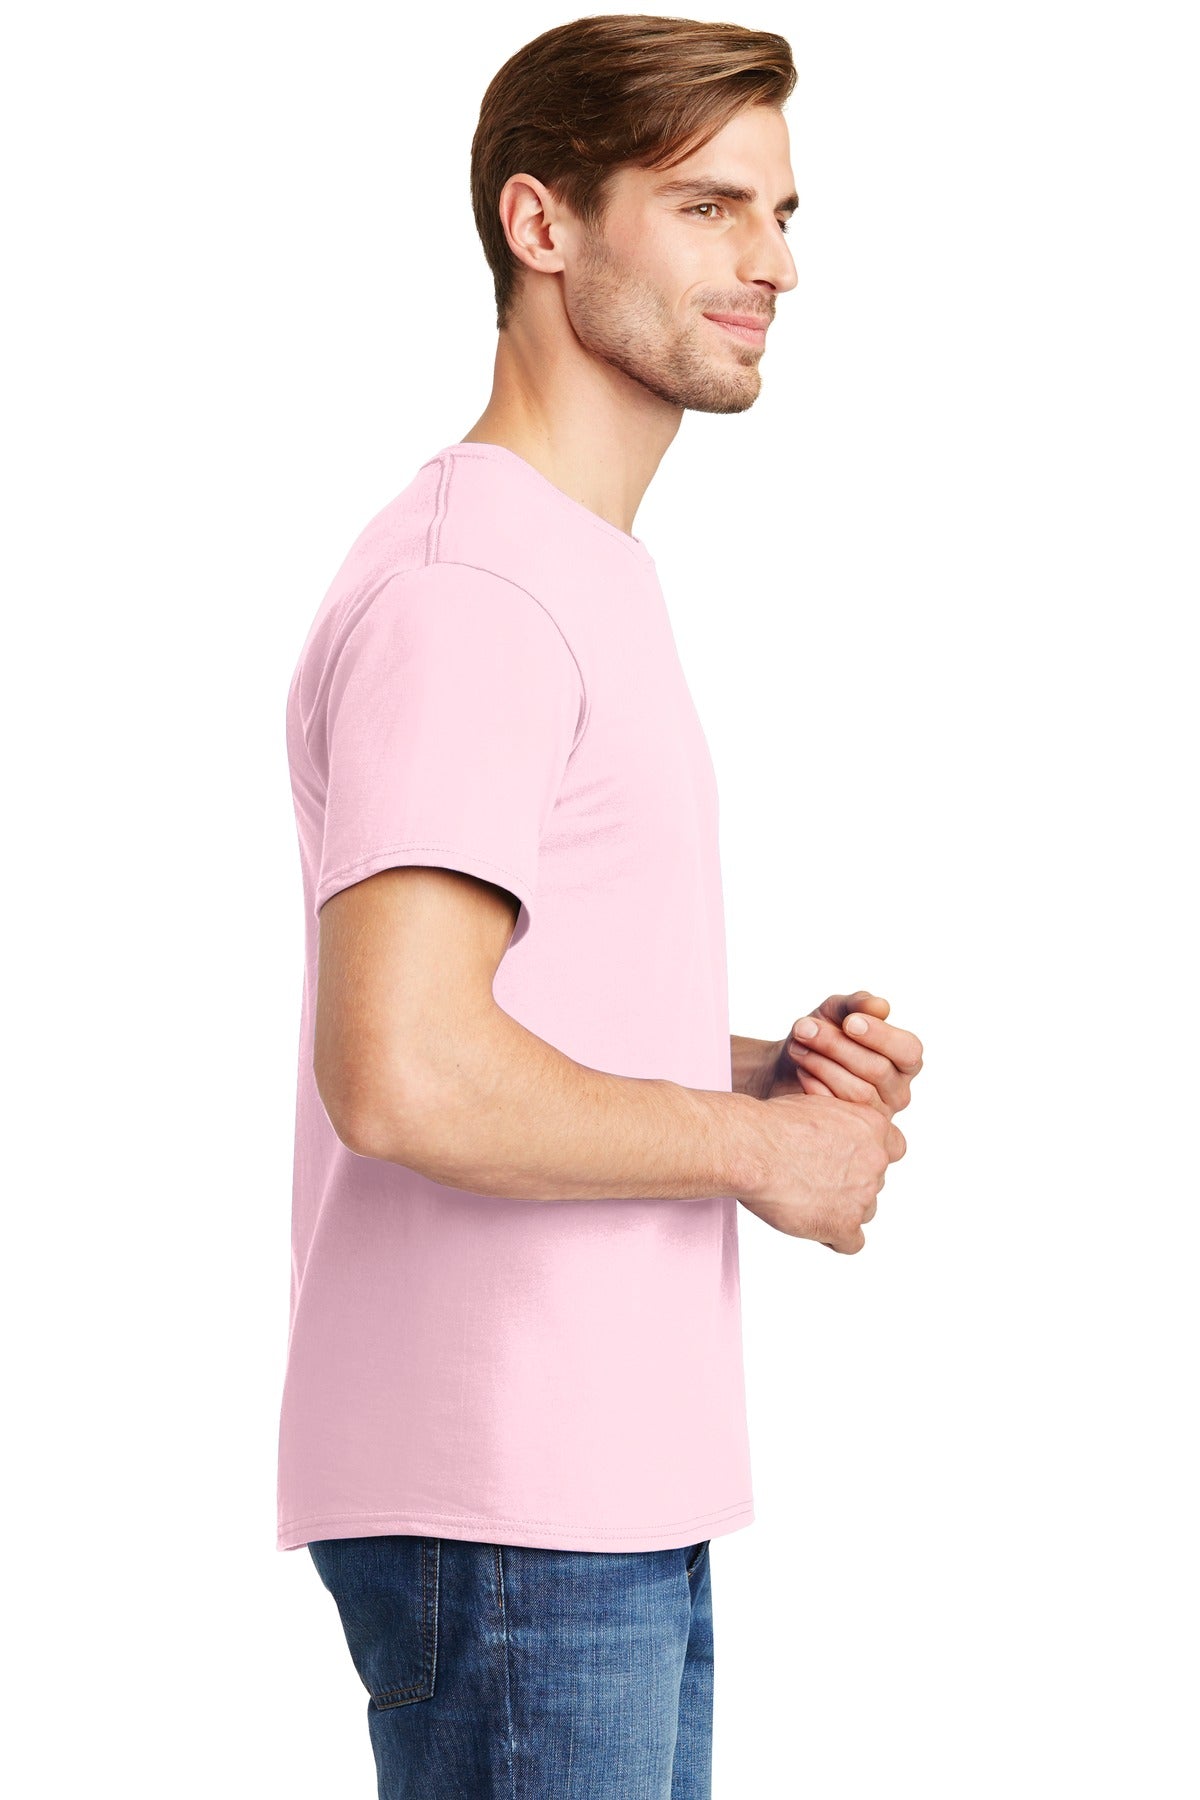 Hanes® - Essential-T 100% Cotton T-Shirt. 5280 [Pale Pink] - DFW Impression